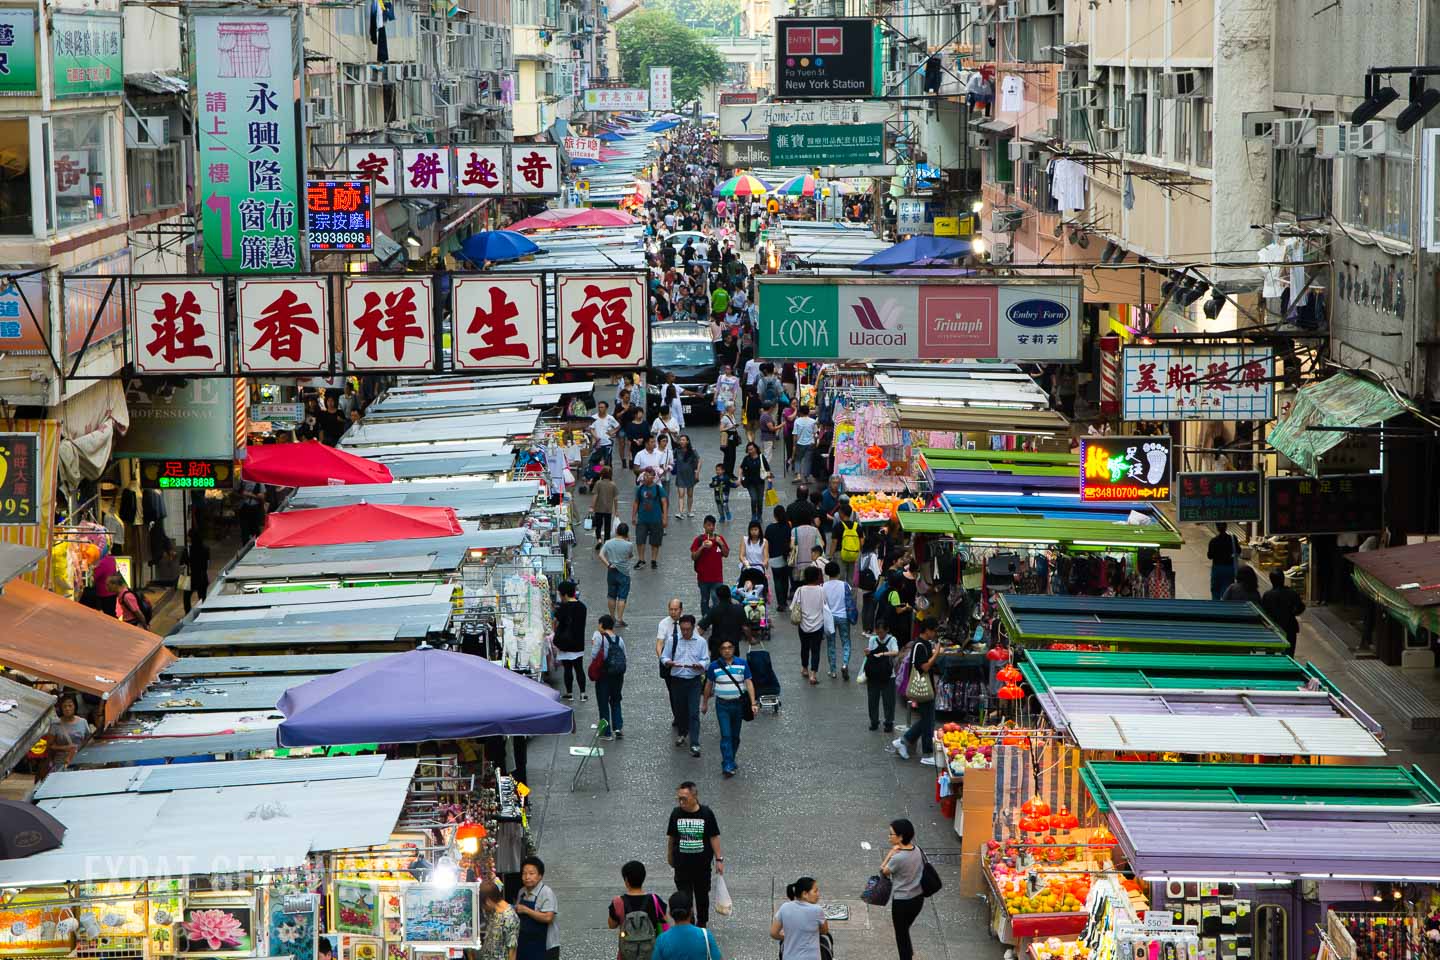 Hong Kong markets.